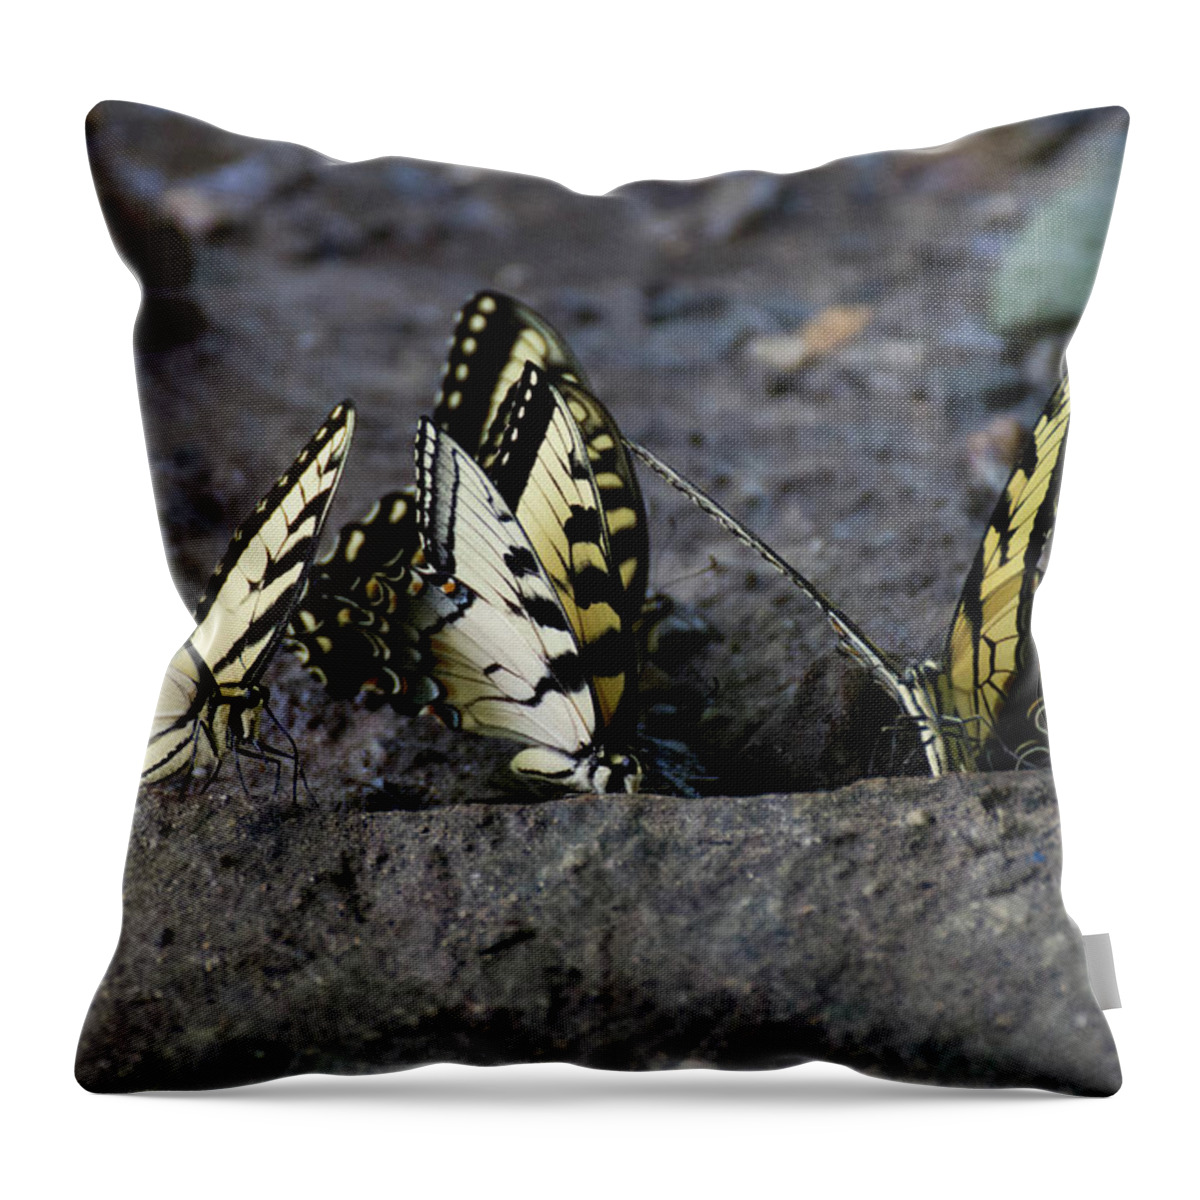 Butterflies Throw Pillow featuring the photograph Butterfly Nation Swallowtails Butterflies by Demetrai Johnson